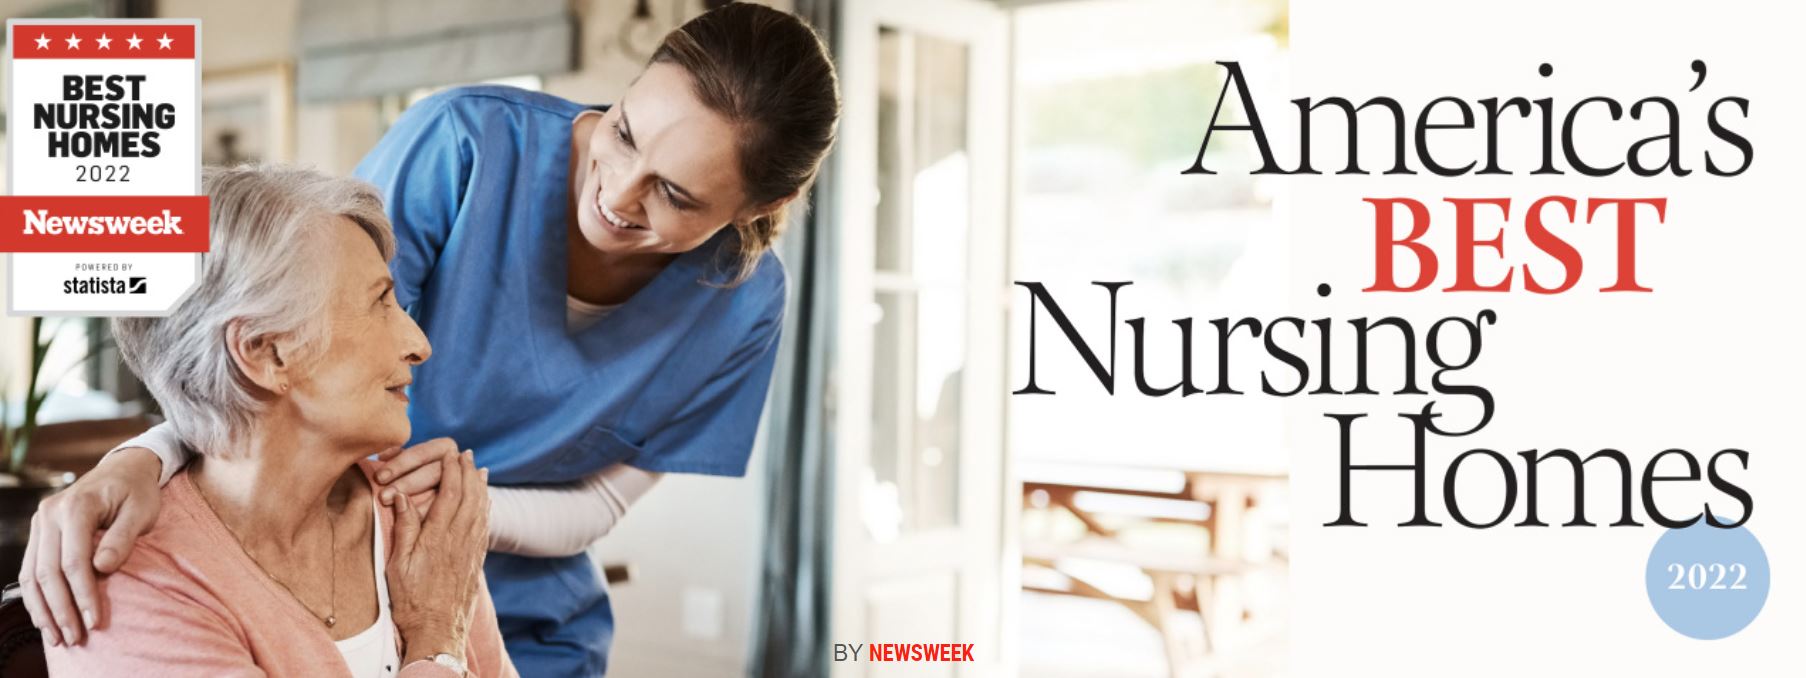 St. John's Awarded as One of "Newsweek's Best Nursing Homes St. John's